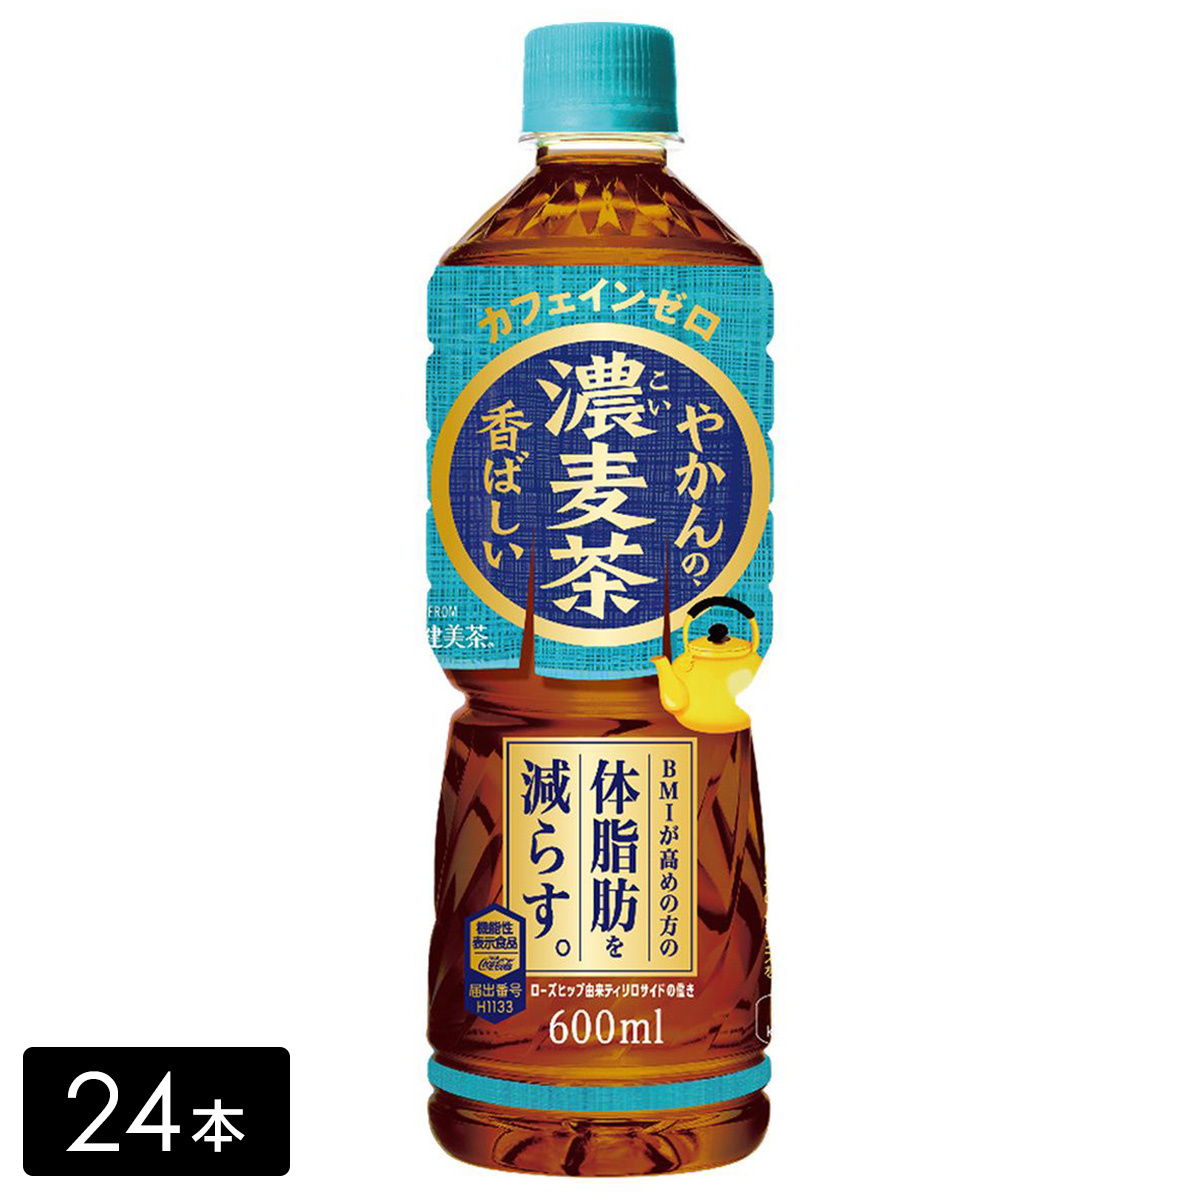 やかんの濃麦茶 from 爽健美茶 600ml 24本(1箱) お茶 ペットボトル ケース売り エコ